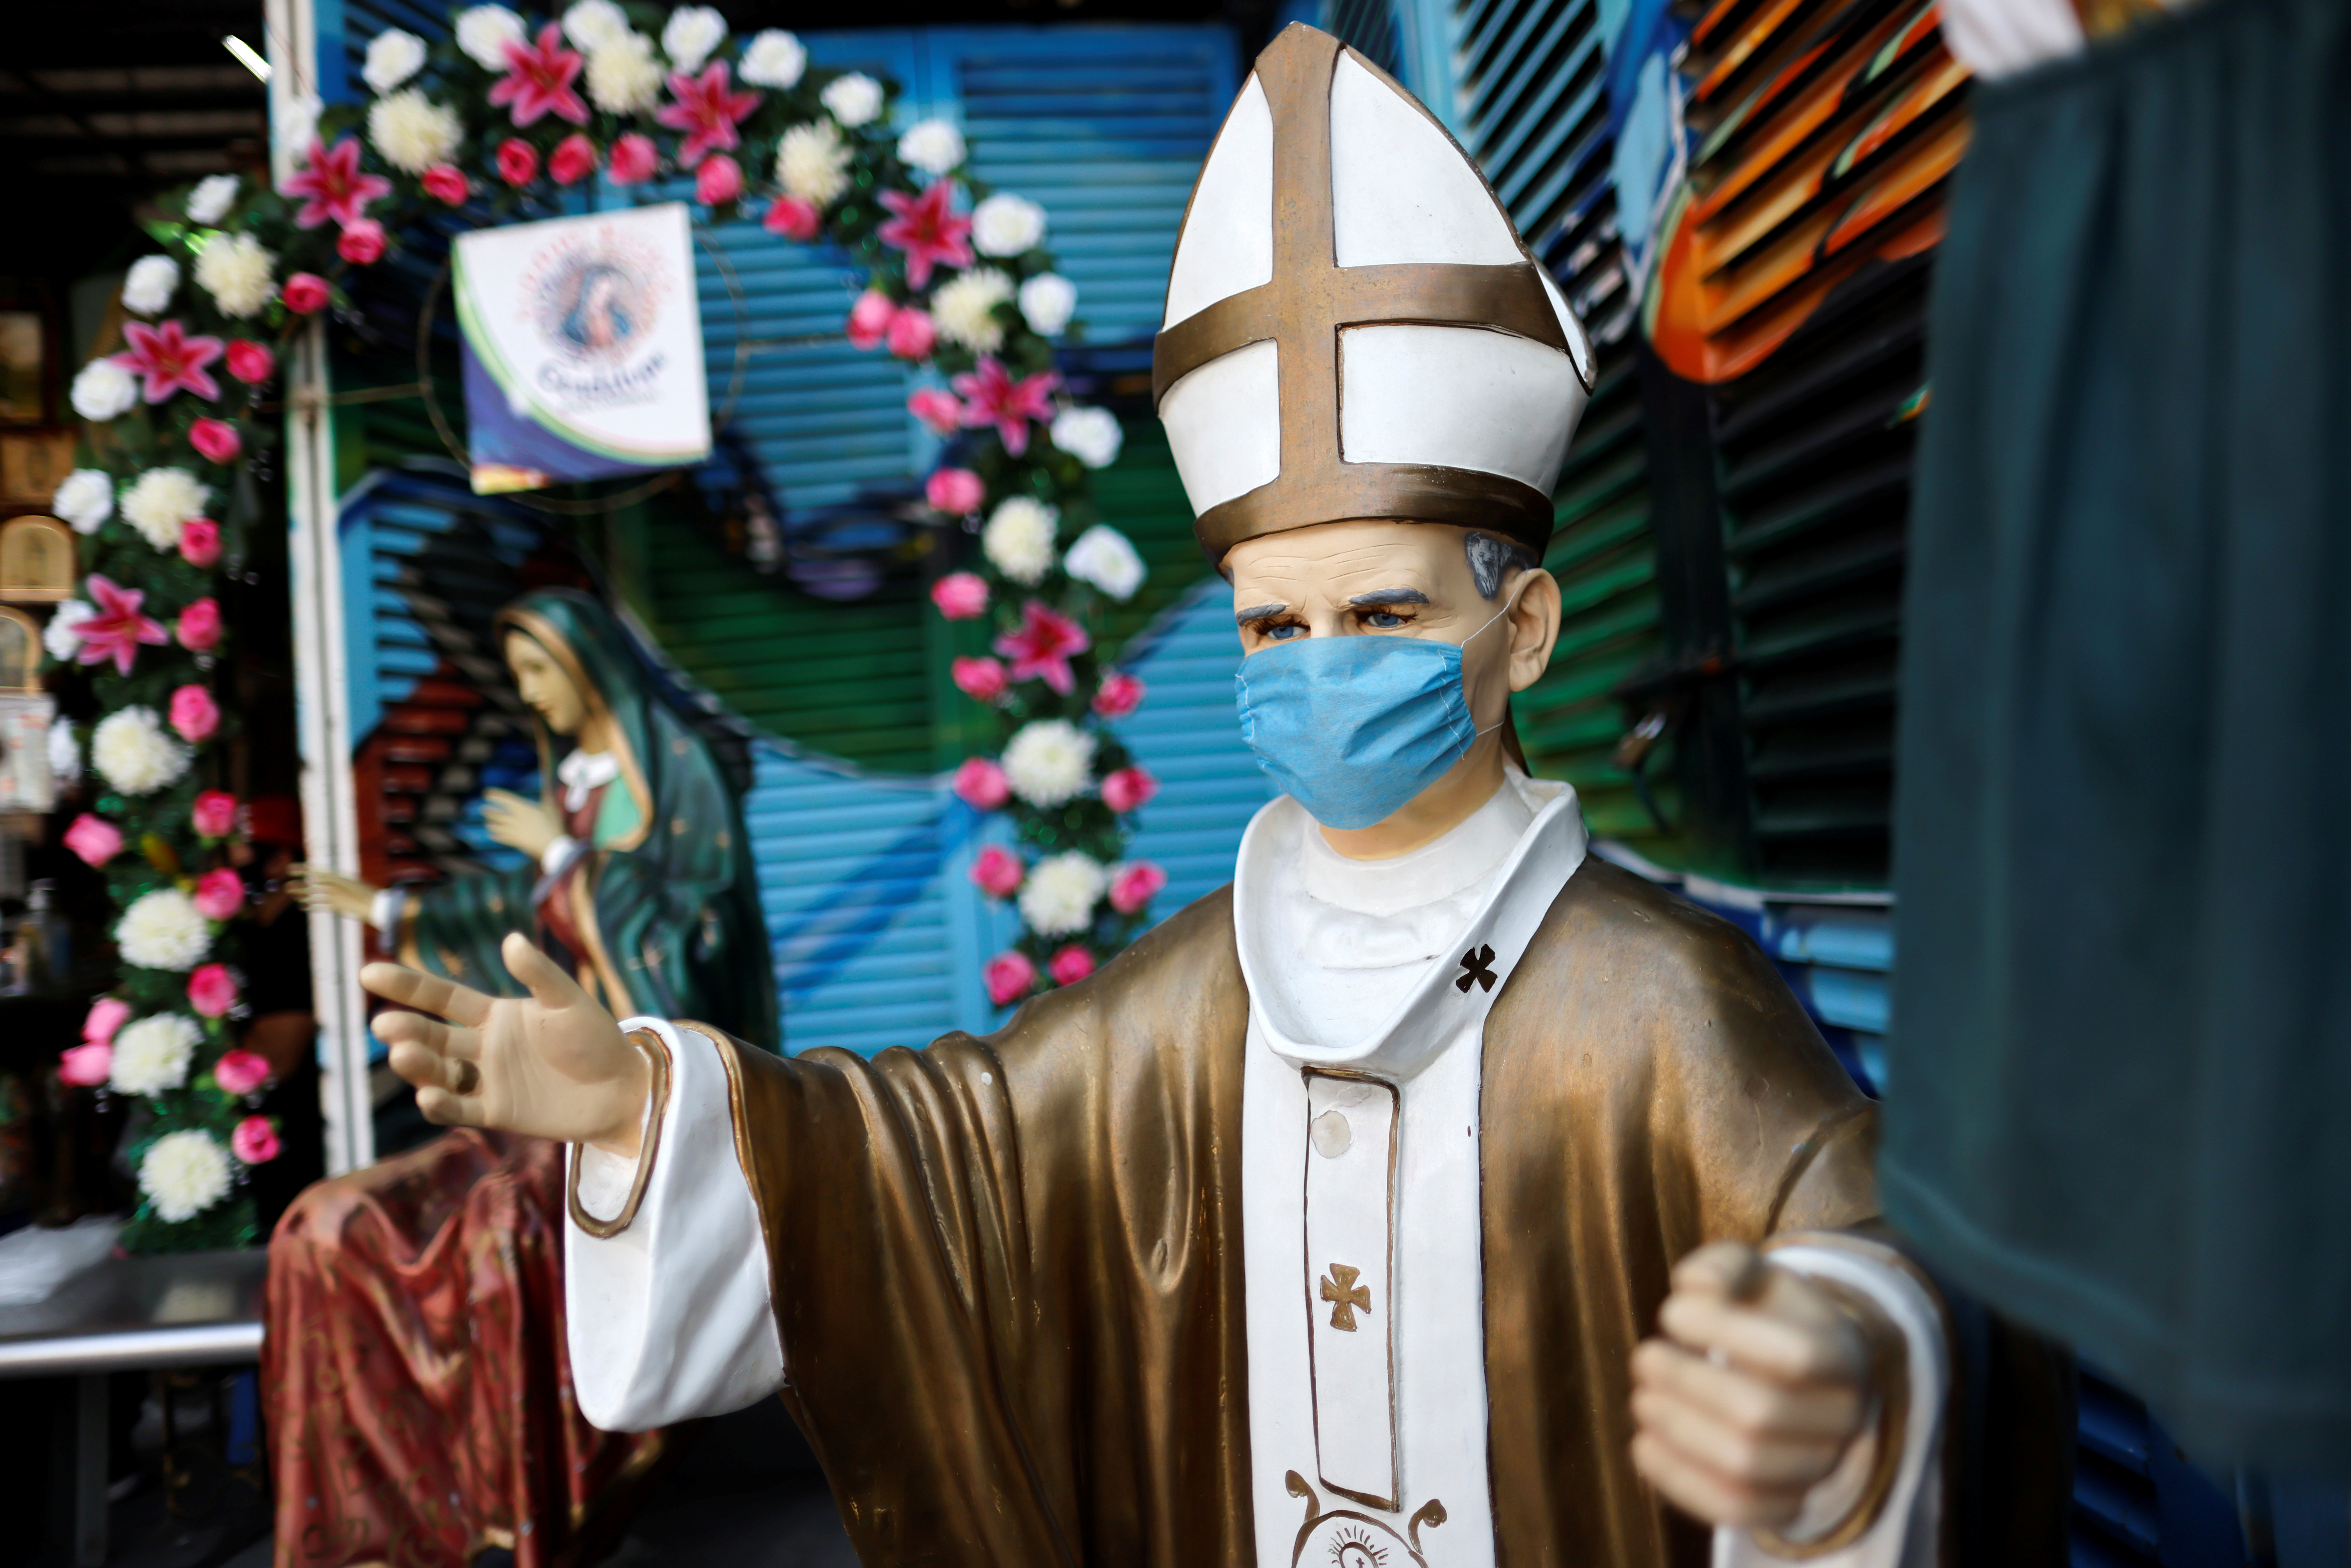 Una figura del difunto Papa Juan Pablo II con una máscara facial se ve cerca de la Basílica de Guadalupe que está temporalmente cerrada para evitar multitudes en el tradicional día de celebración de la Virgen de Guadalupe el 12 de diciembre, en la Ciudad de México, México, 10 de diciembre de 2020.